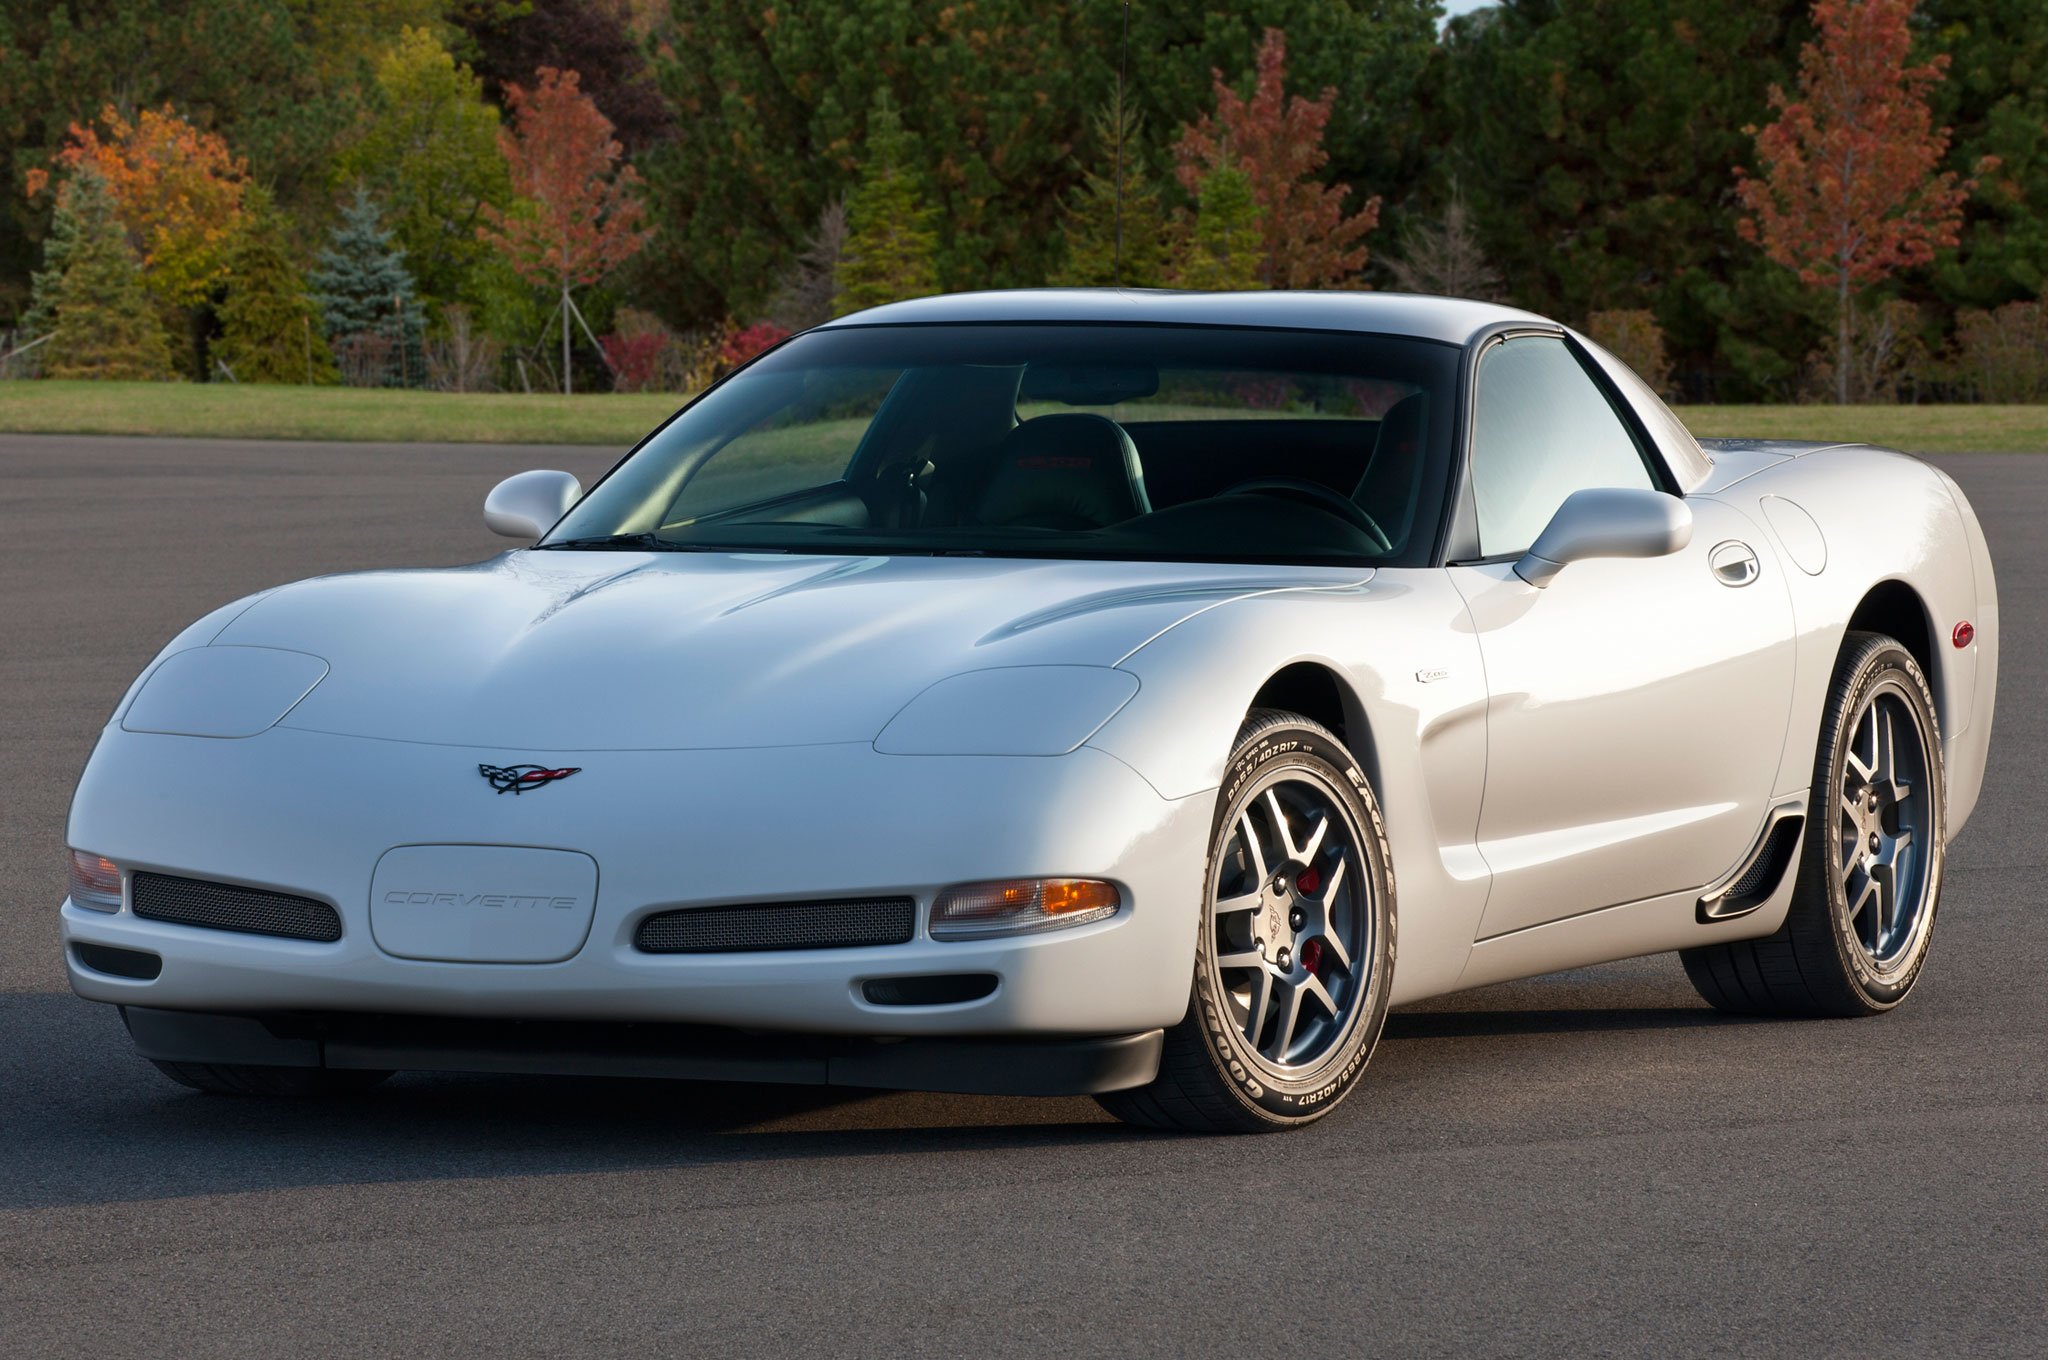 1997, 04, C, 5, Chevrolet, Corvette, Coupe, Convertible, Muscle